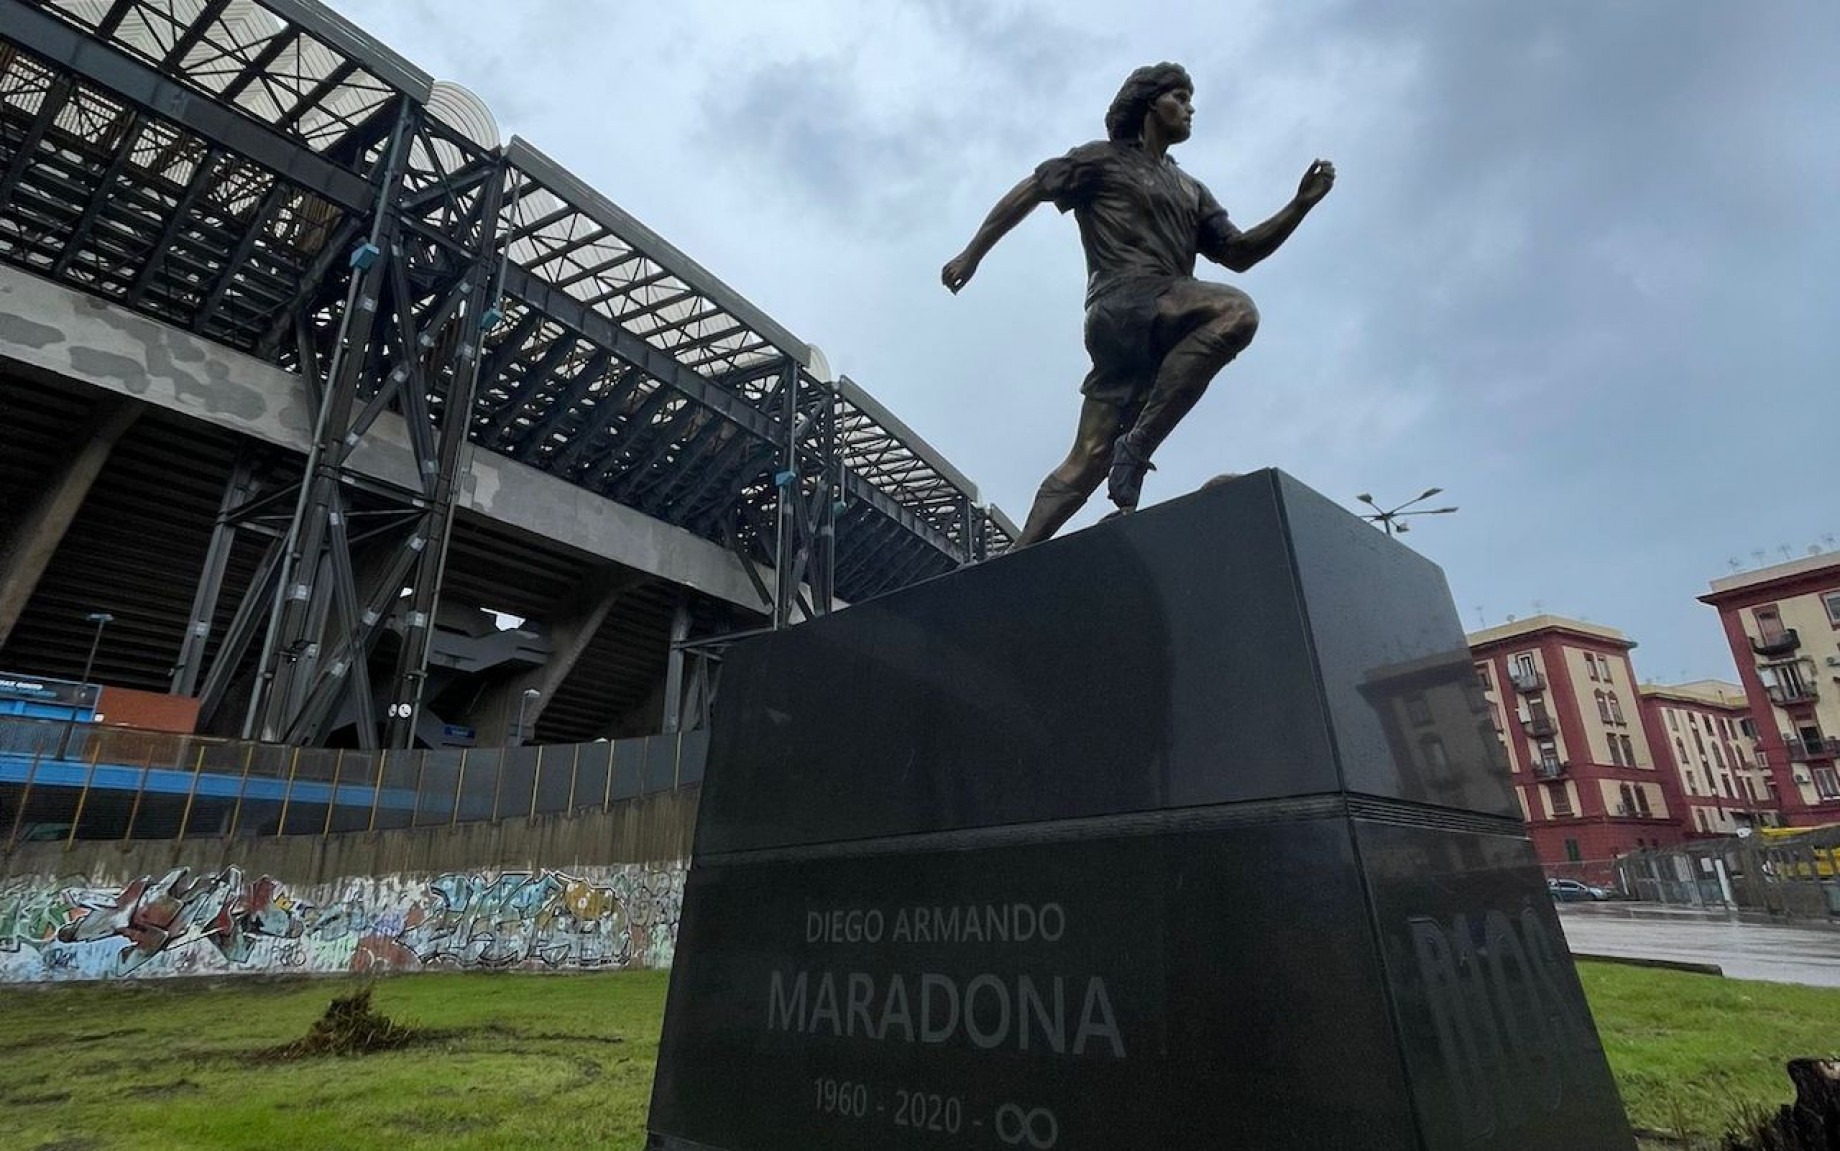 statua-maradona-stadio-1-gdm-gpo.jpeg